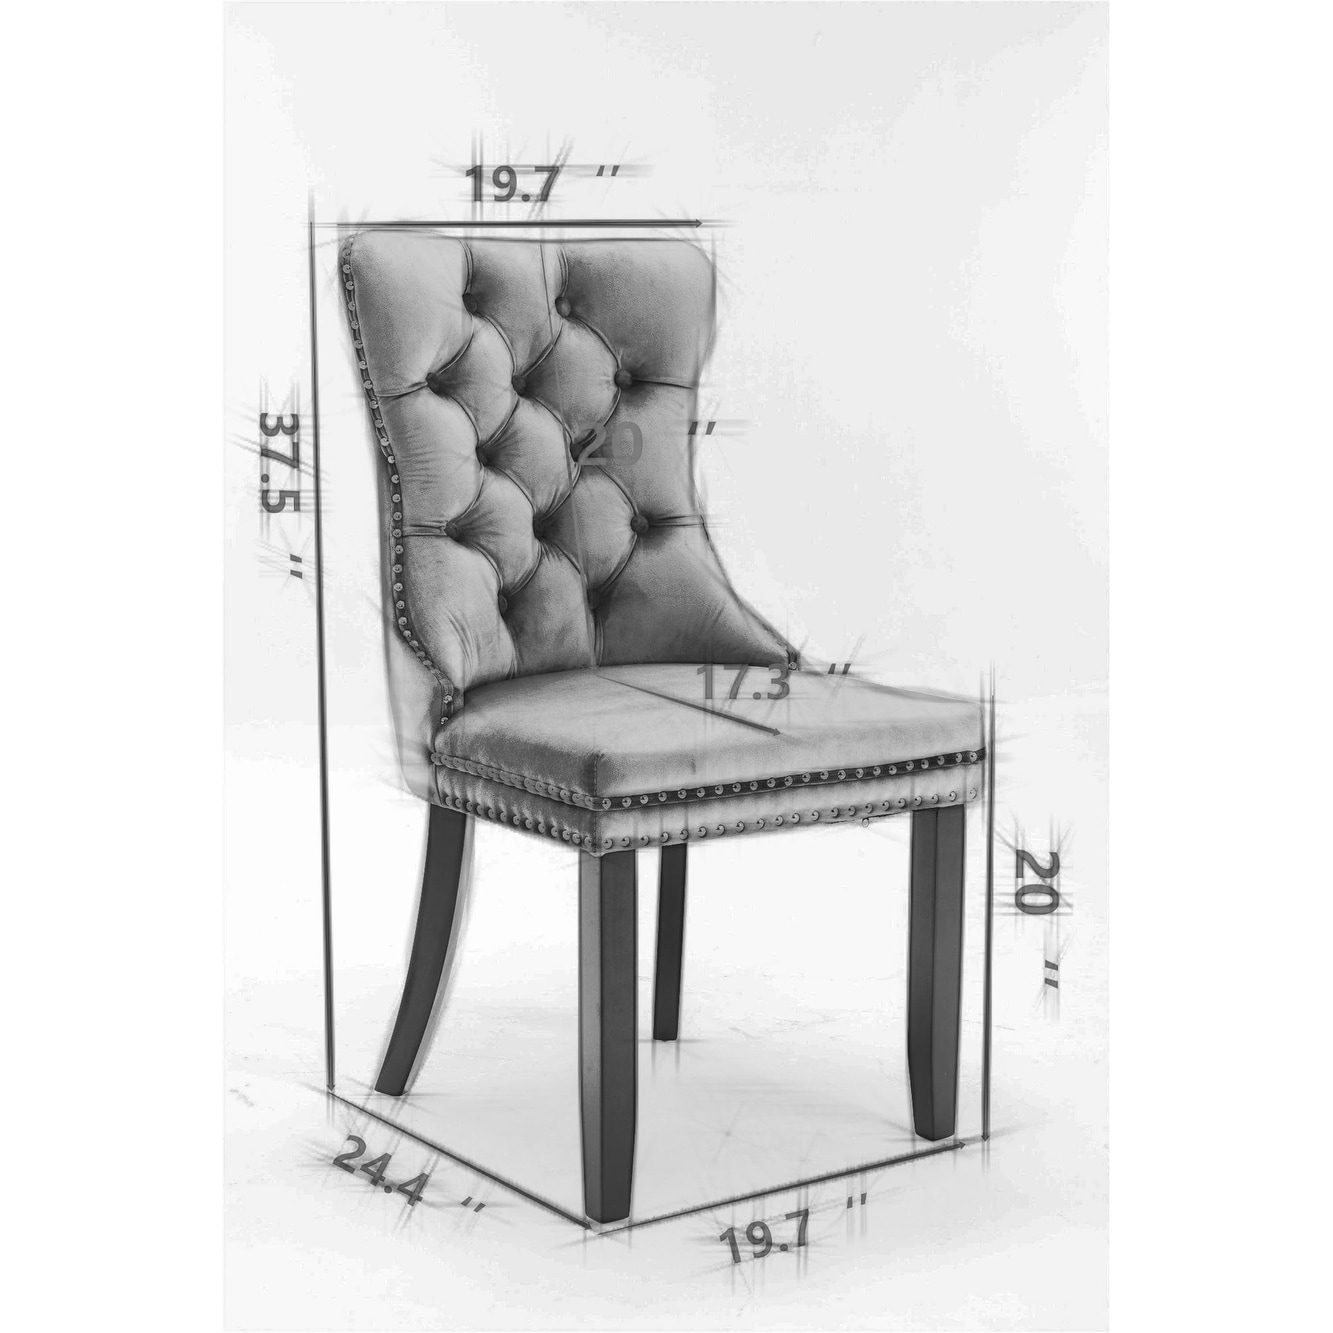 Velvet Upholstered Dining Chair